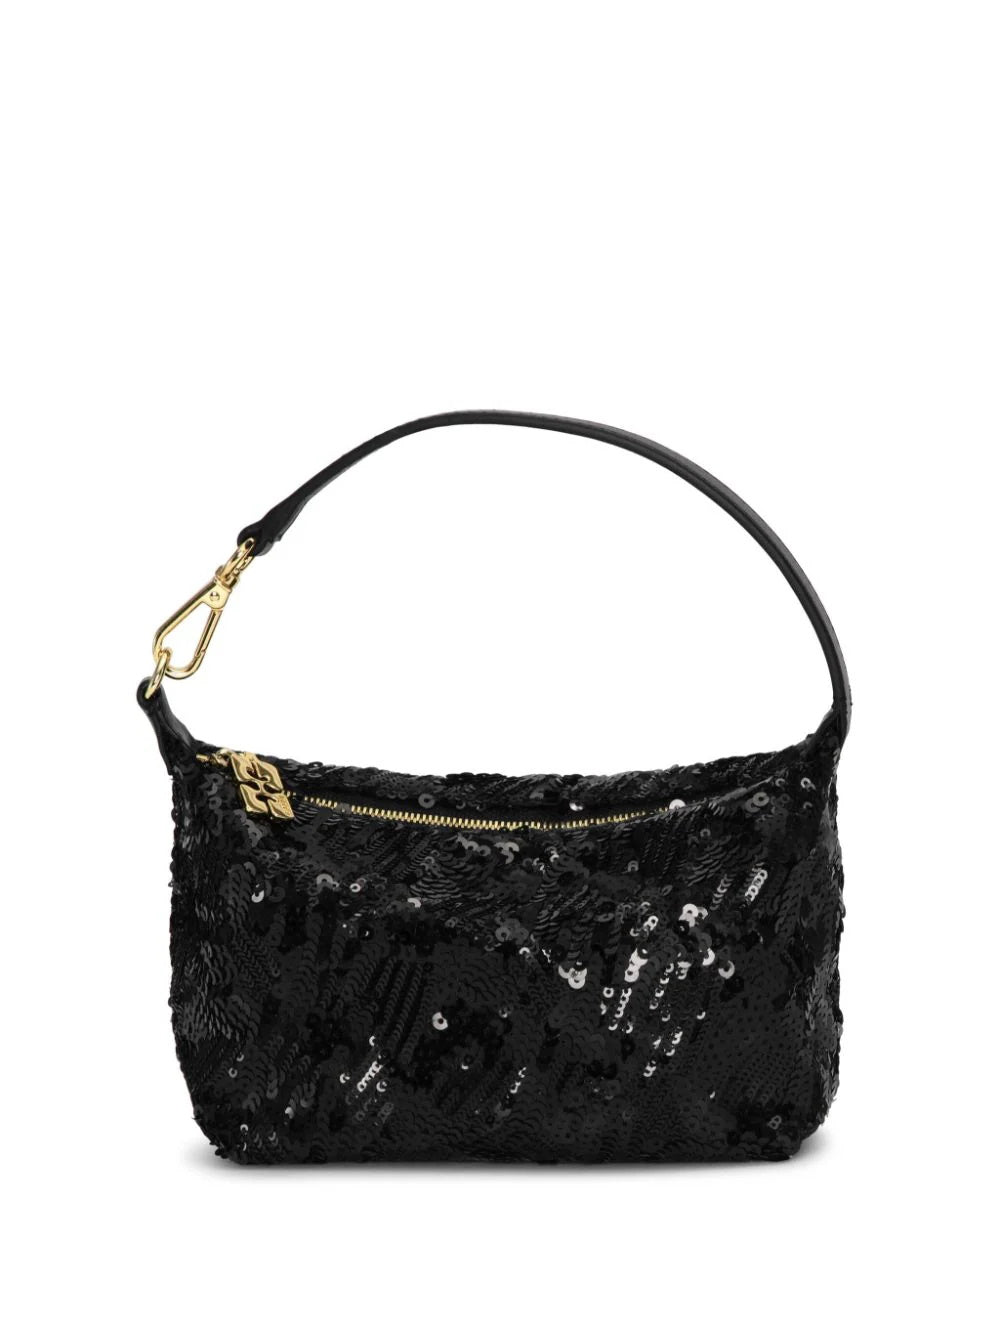 Vintage Black Sequin Purse Shoulder Bag Evening Wear Spring Closure | eBay